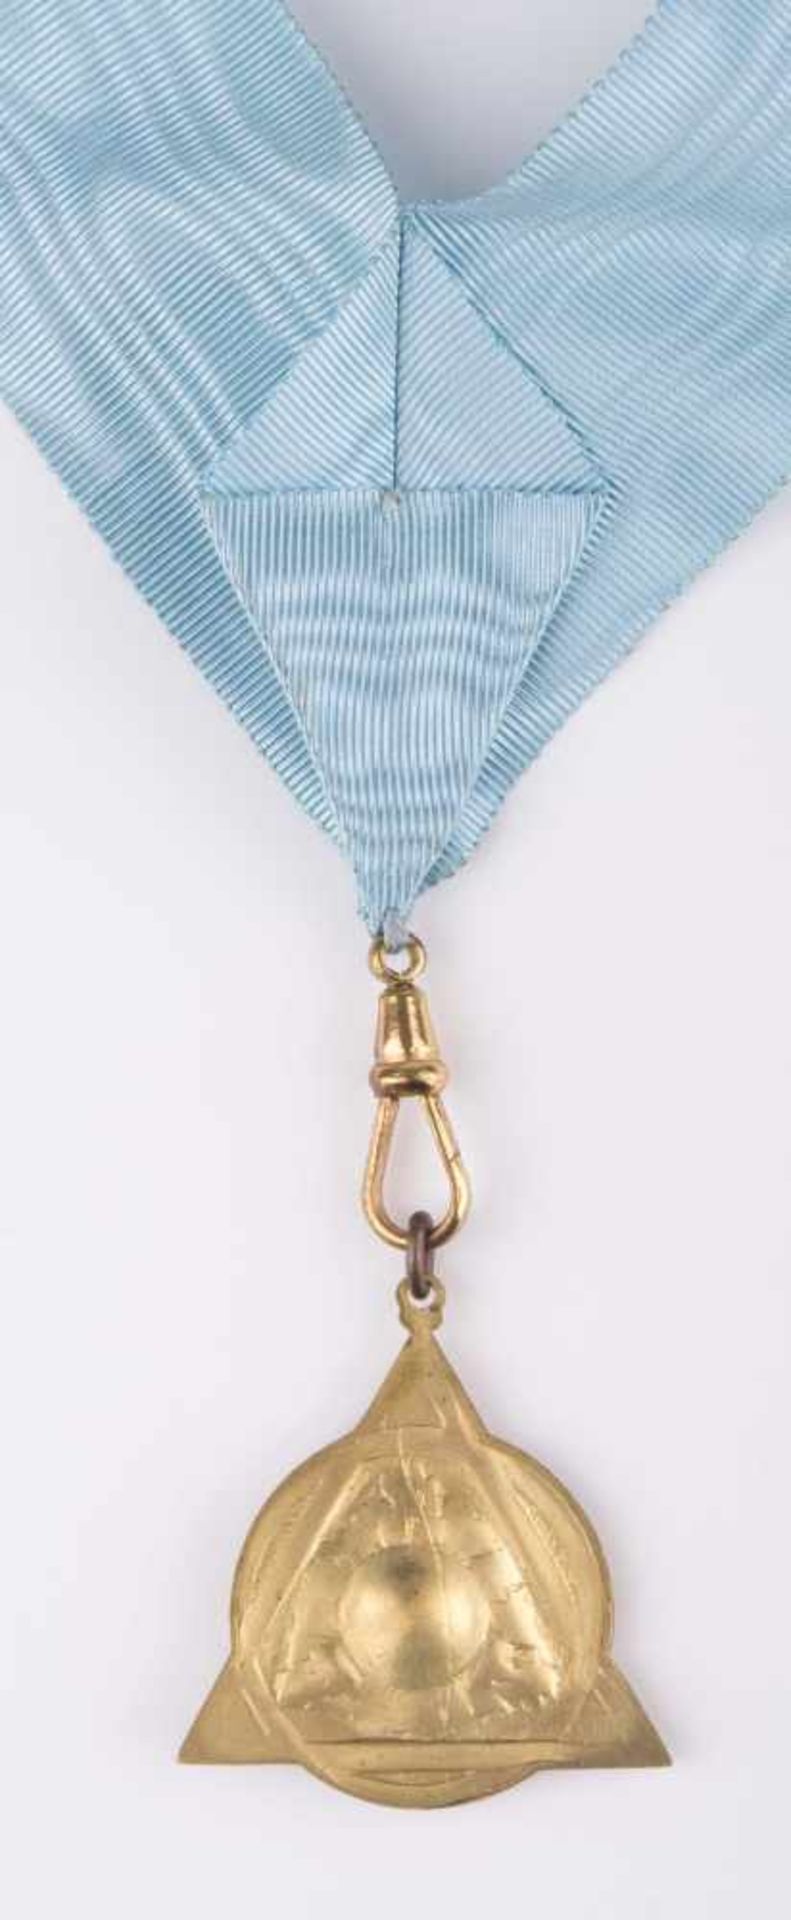 Freimaurer Orden / Freemason medal reden-hören-schweigen, am schwarzblauen Trageband - Bild 5 aus 6